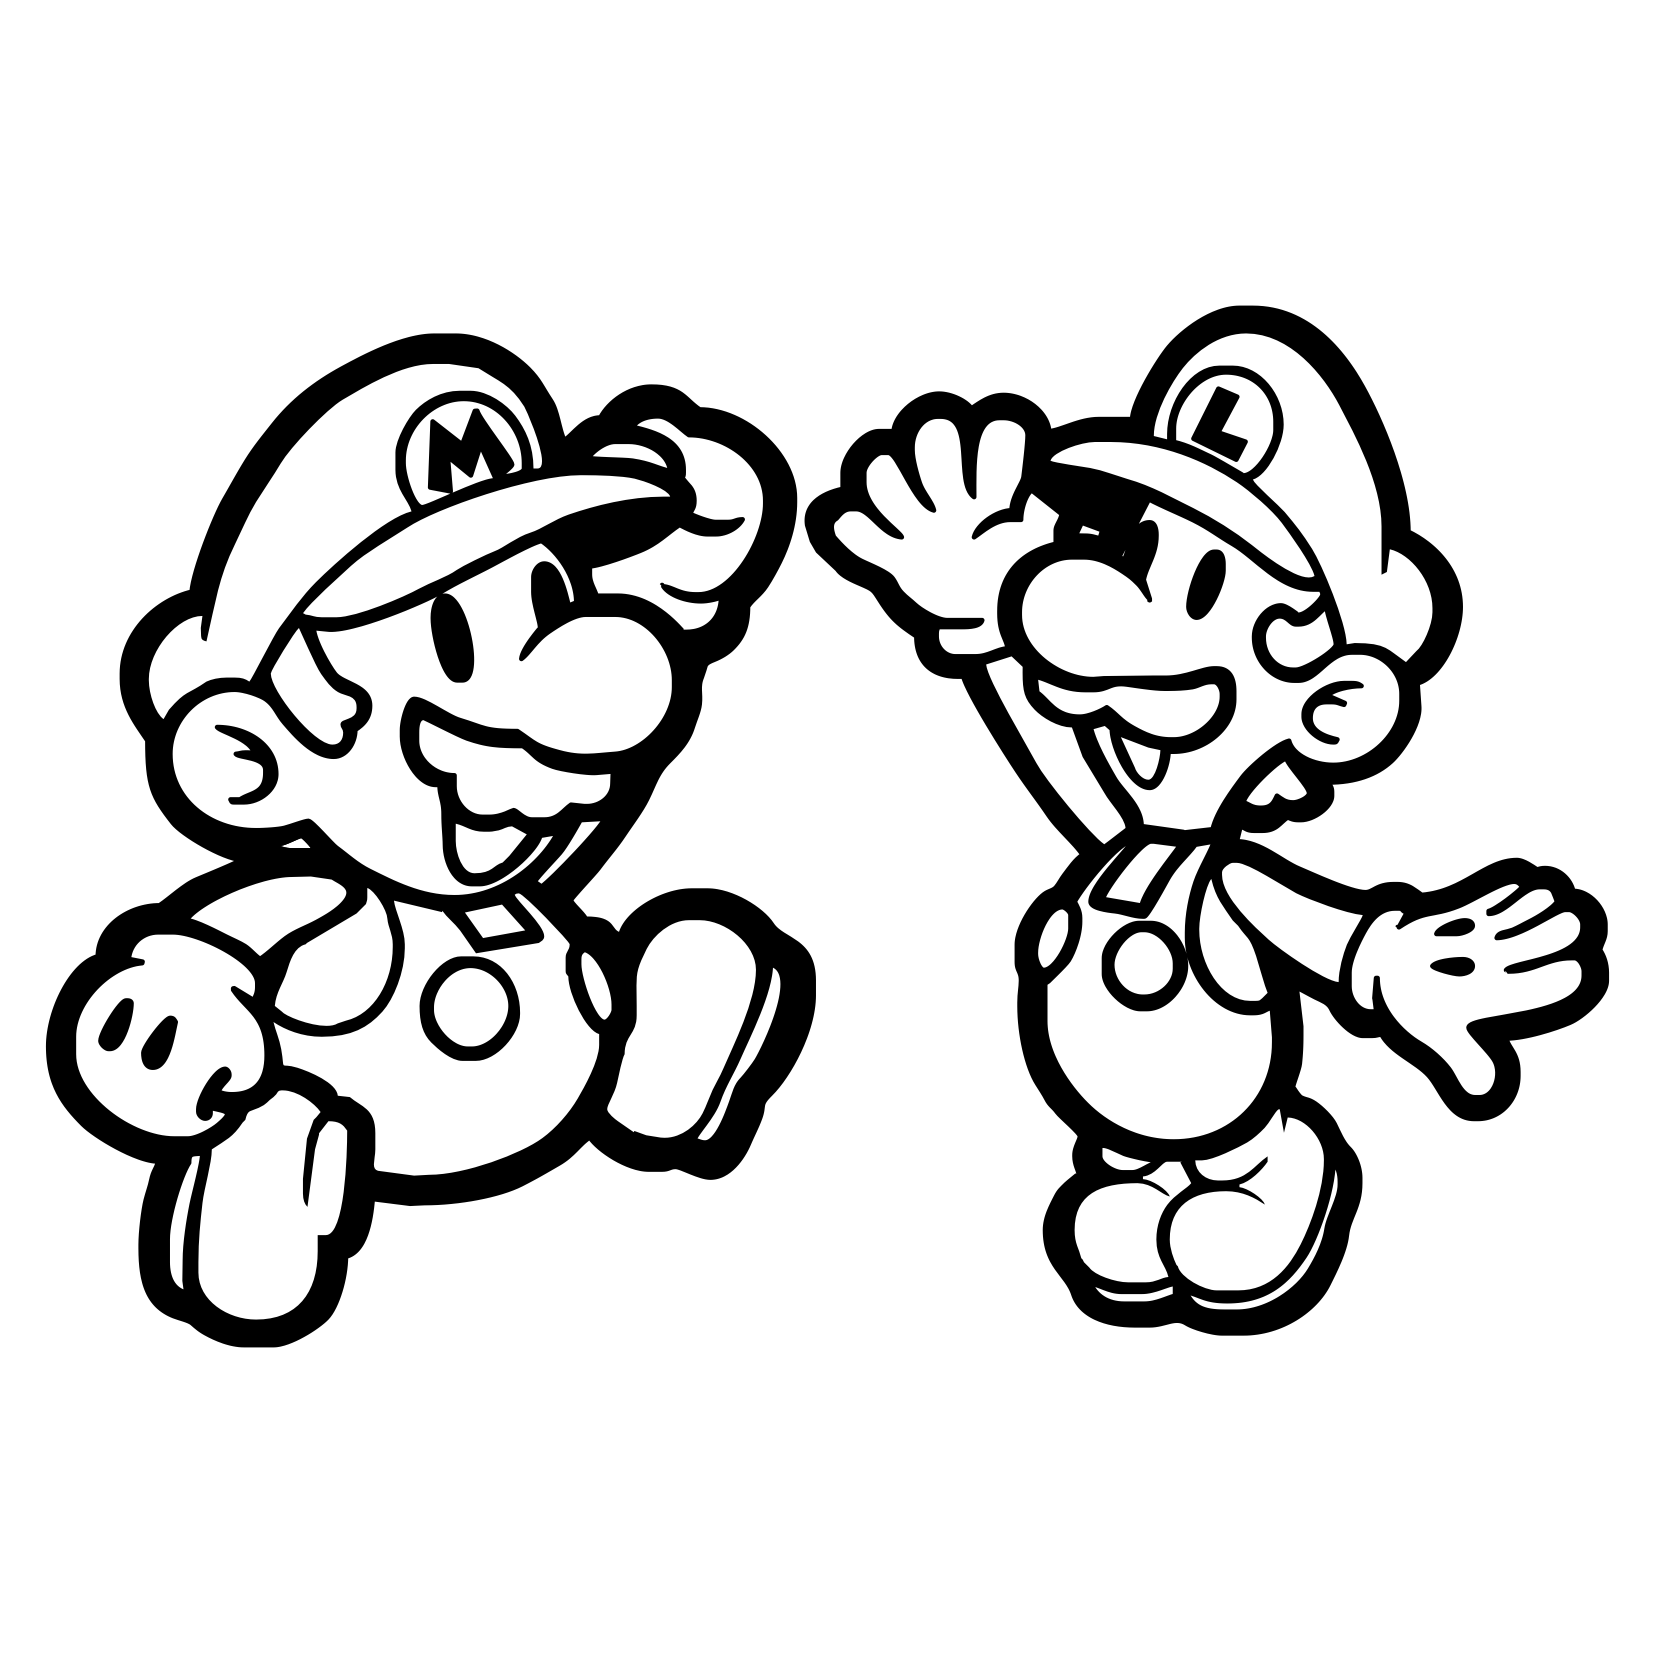 Mario e Luigi em crianças!